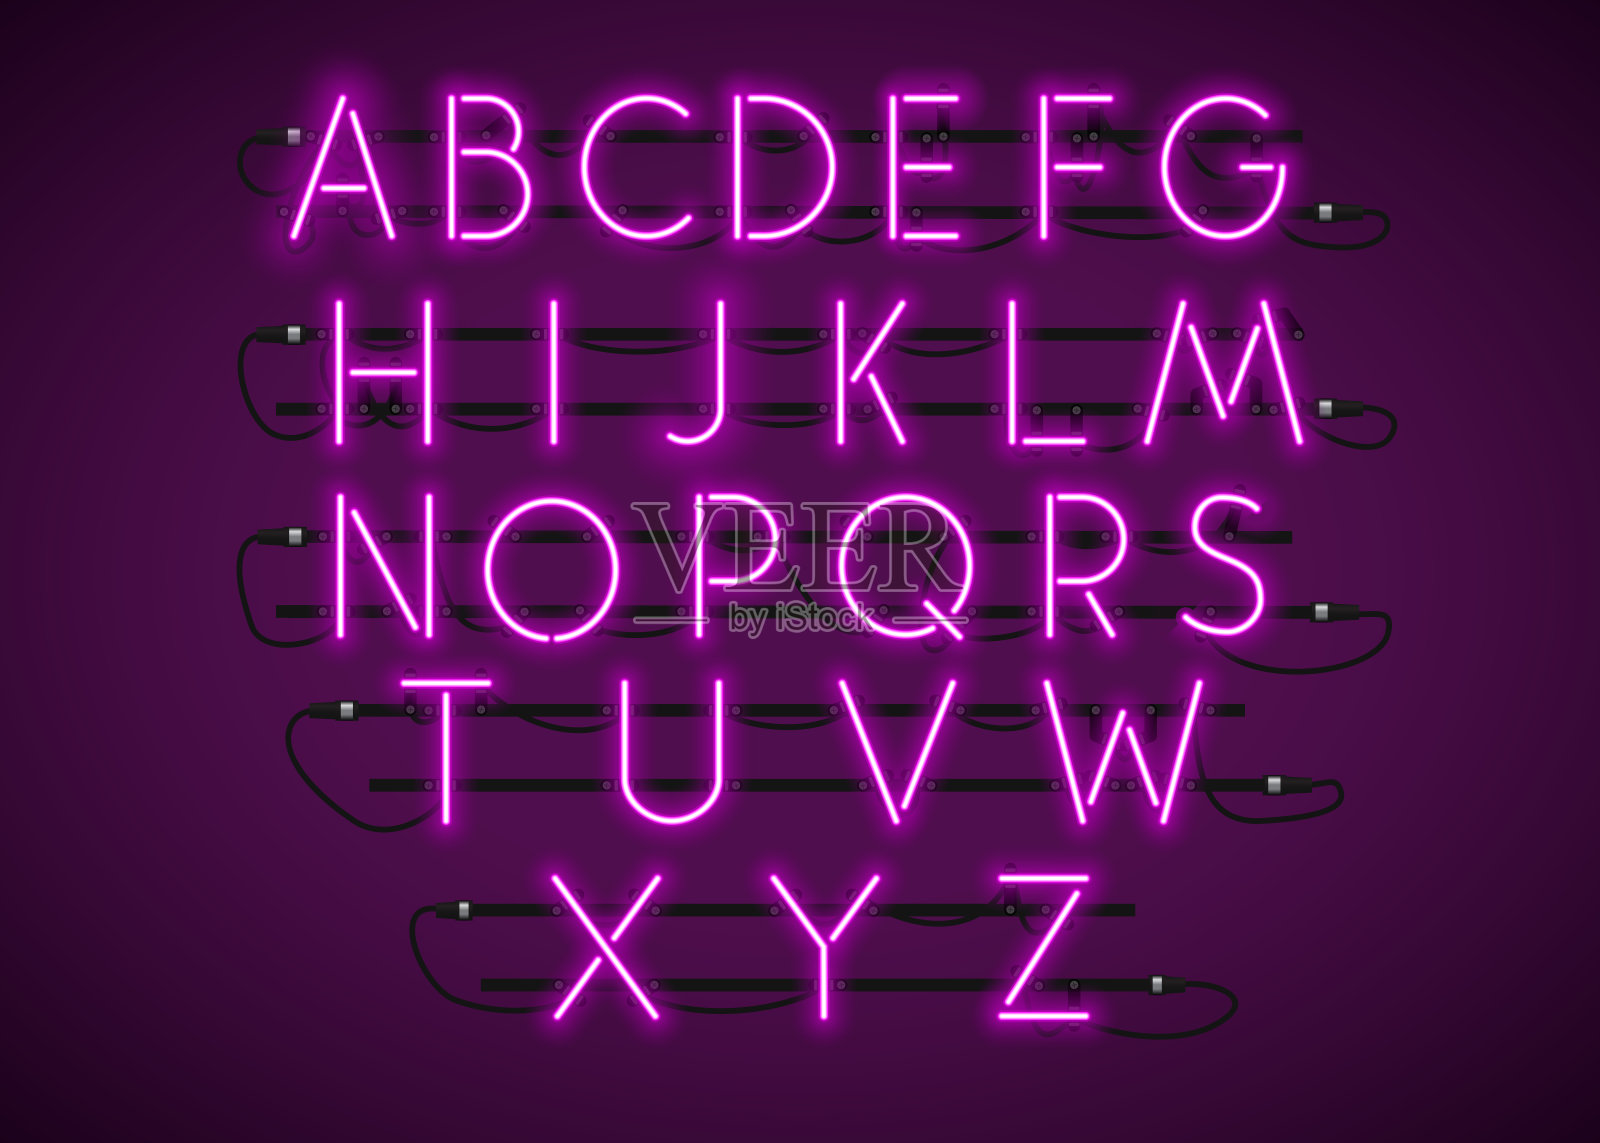 紫色霓虹字体设置在紫色背景上。设计元素图片